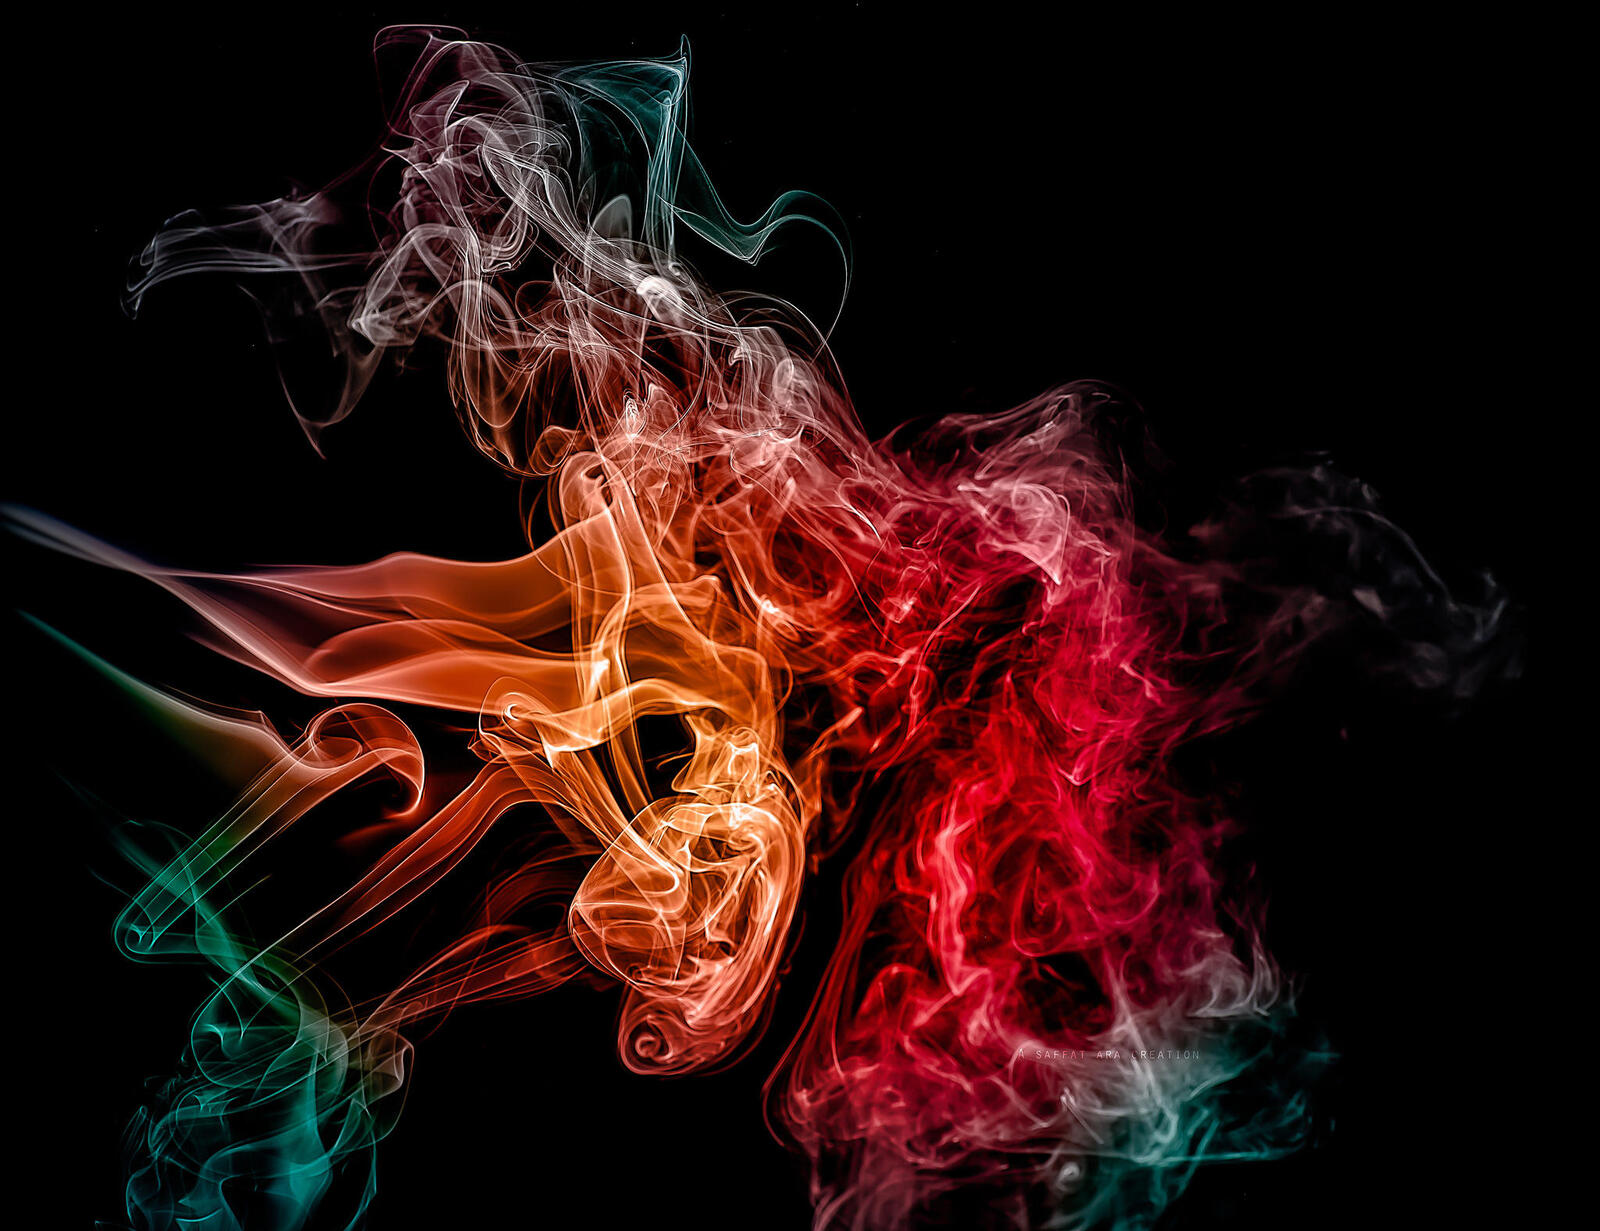 Бесплатное фото Абстракция дым